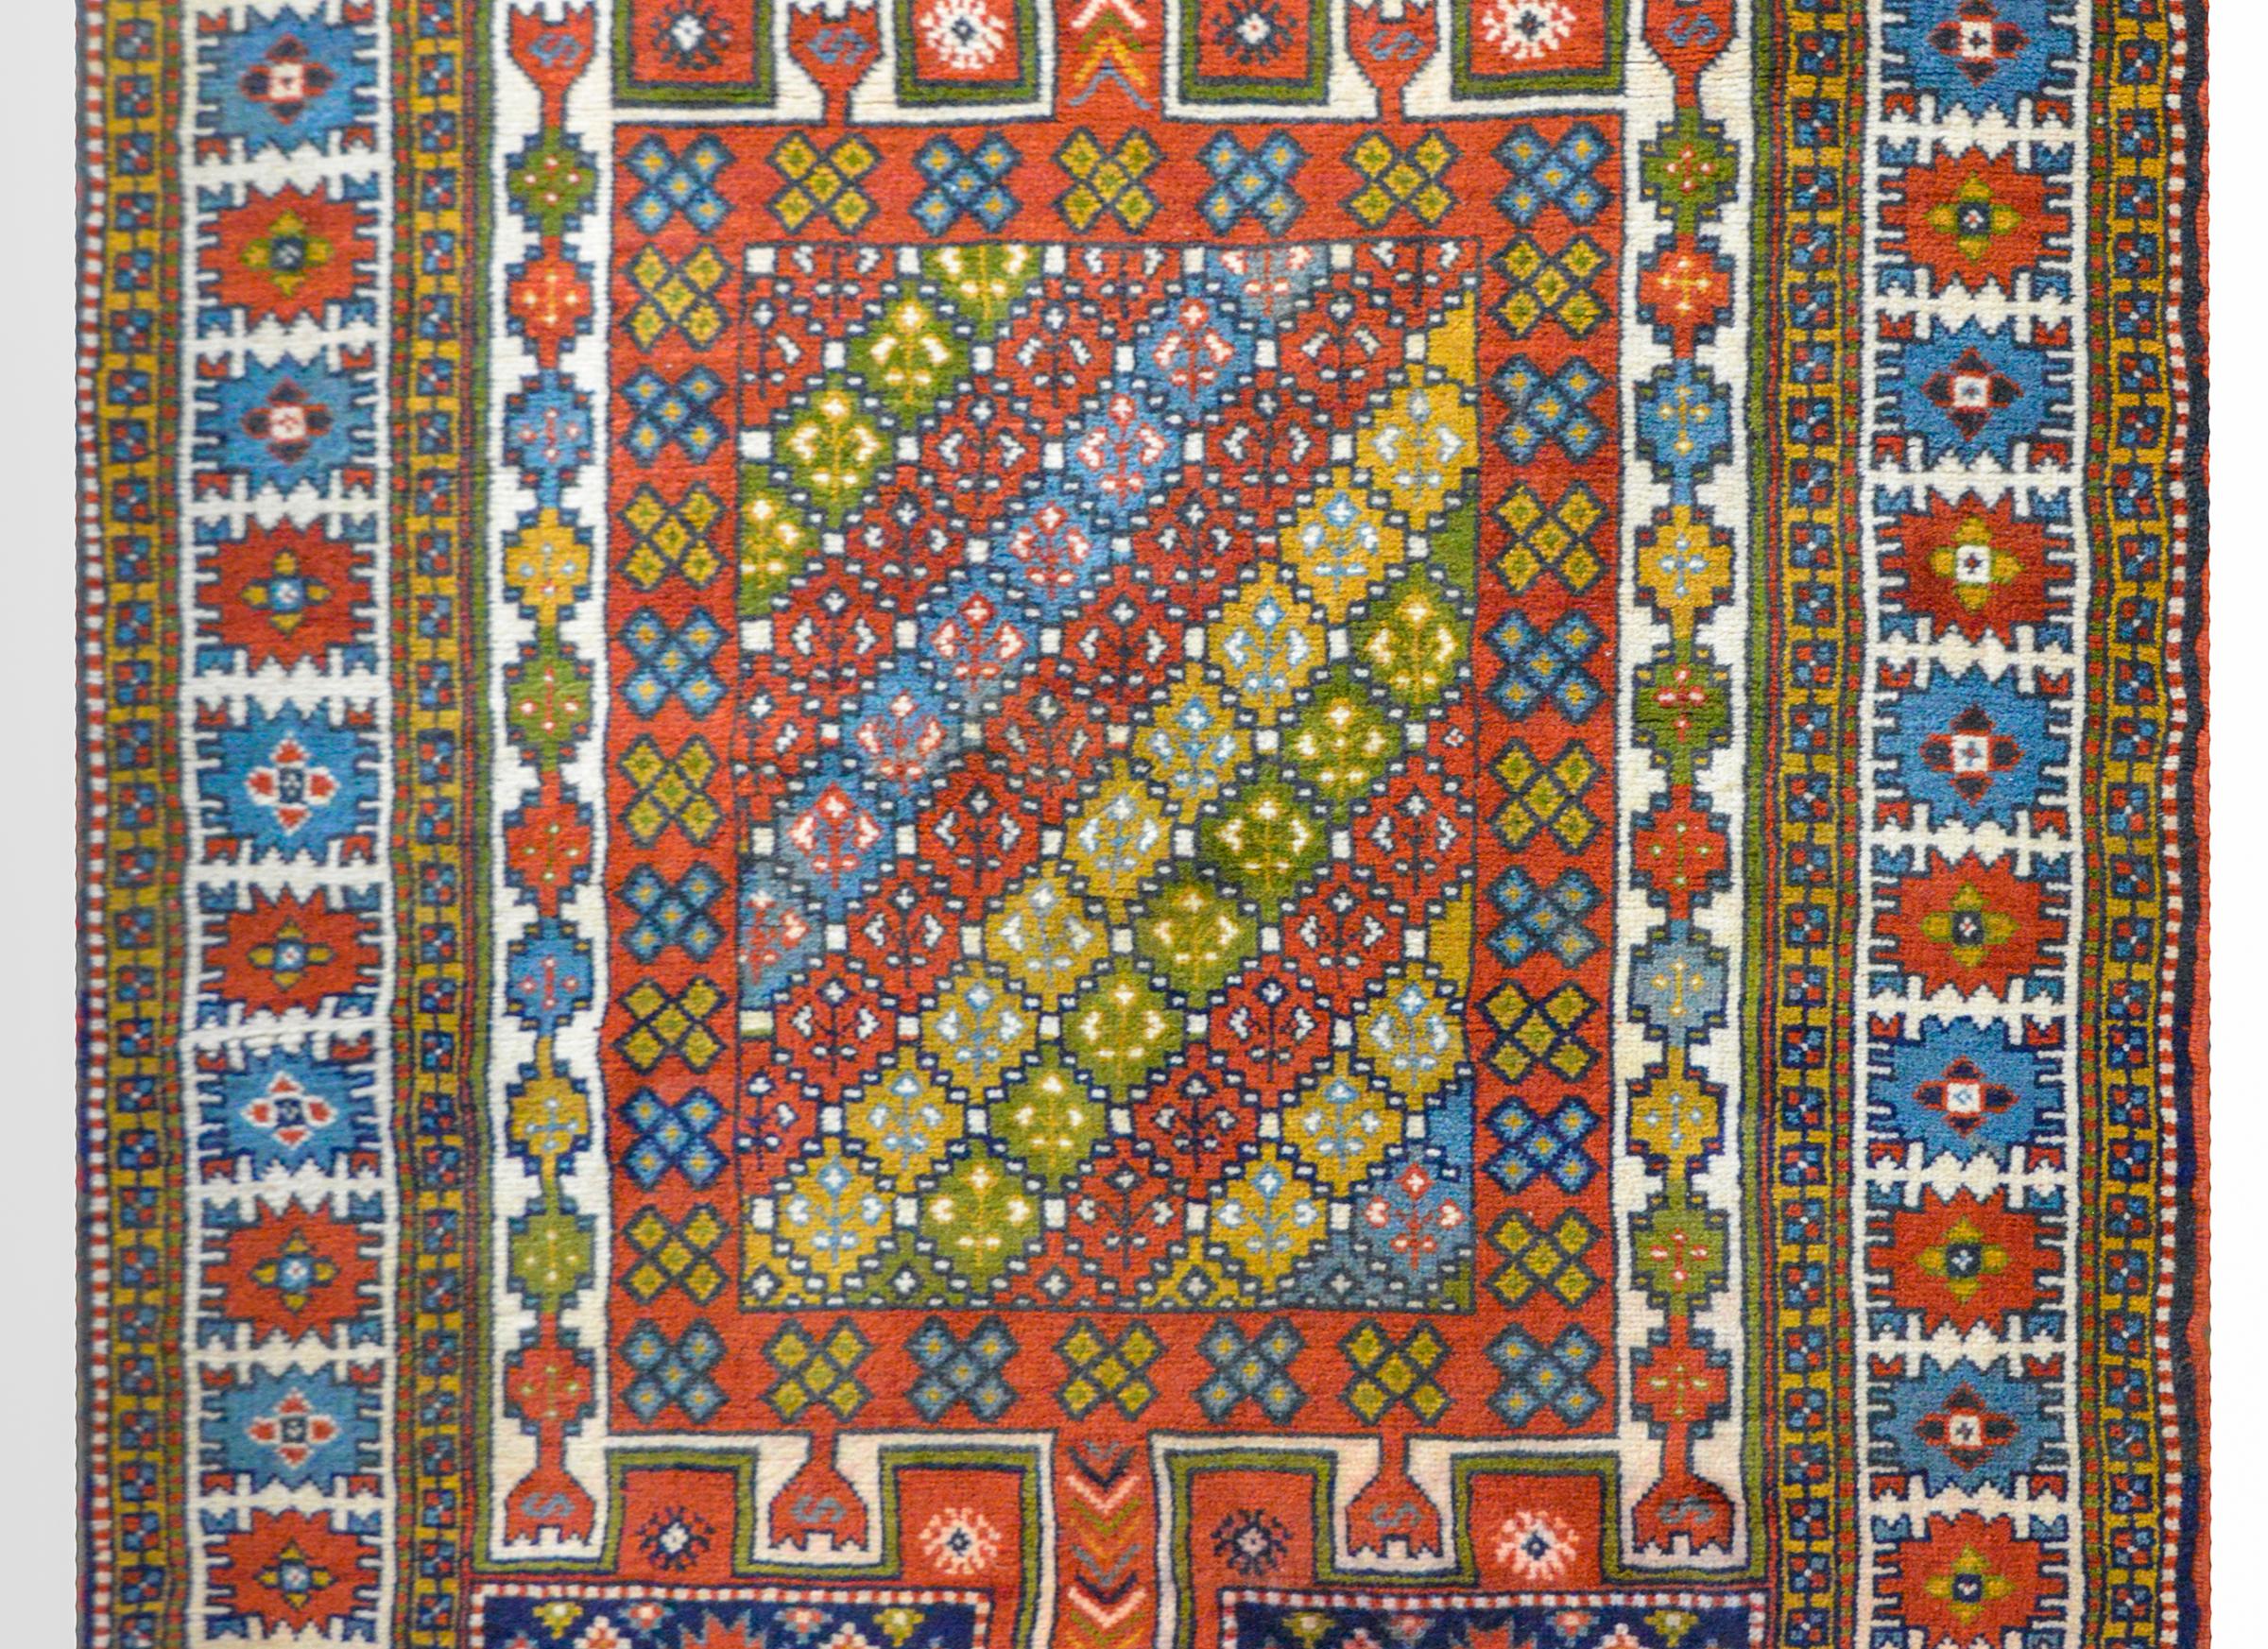 Tapis de prière turc d'Anatolie présentant un fantastique motif floral et géométrique stylisé, tissé dans une myriade de couleurs primaires, notamment l'indigo, le cramoisi, l'or et le vert, sur un fond blanc. La bordure est magnifique avec un grand